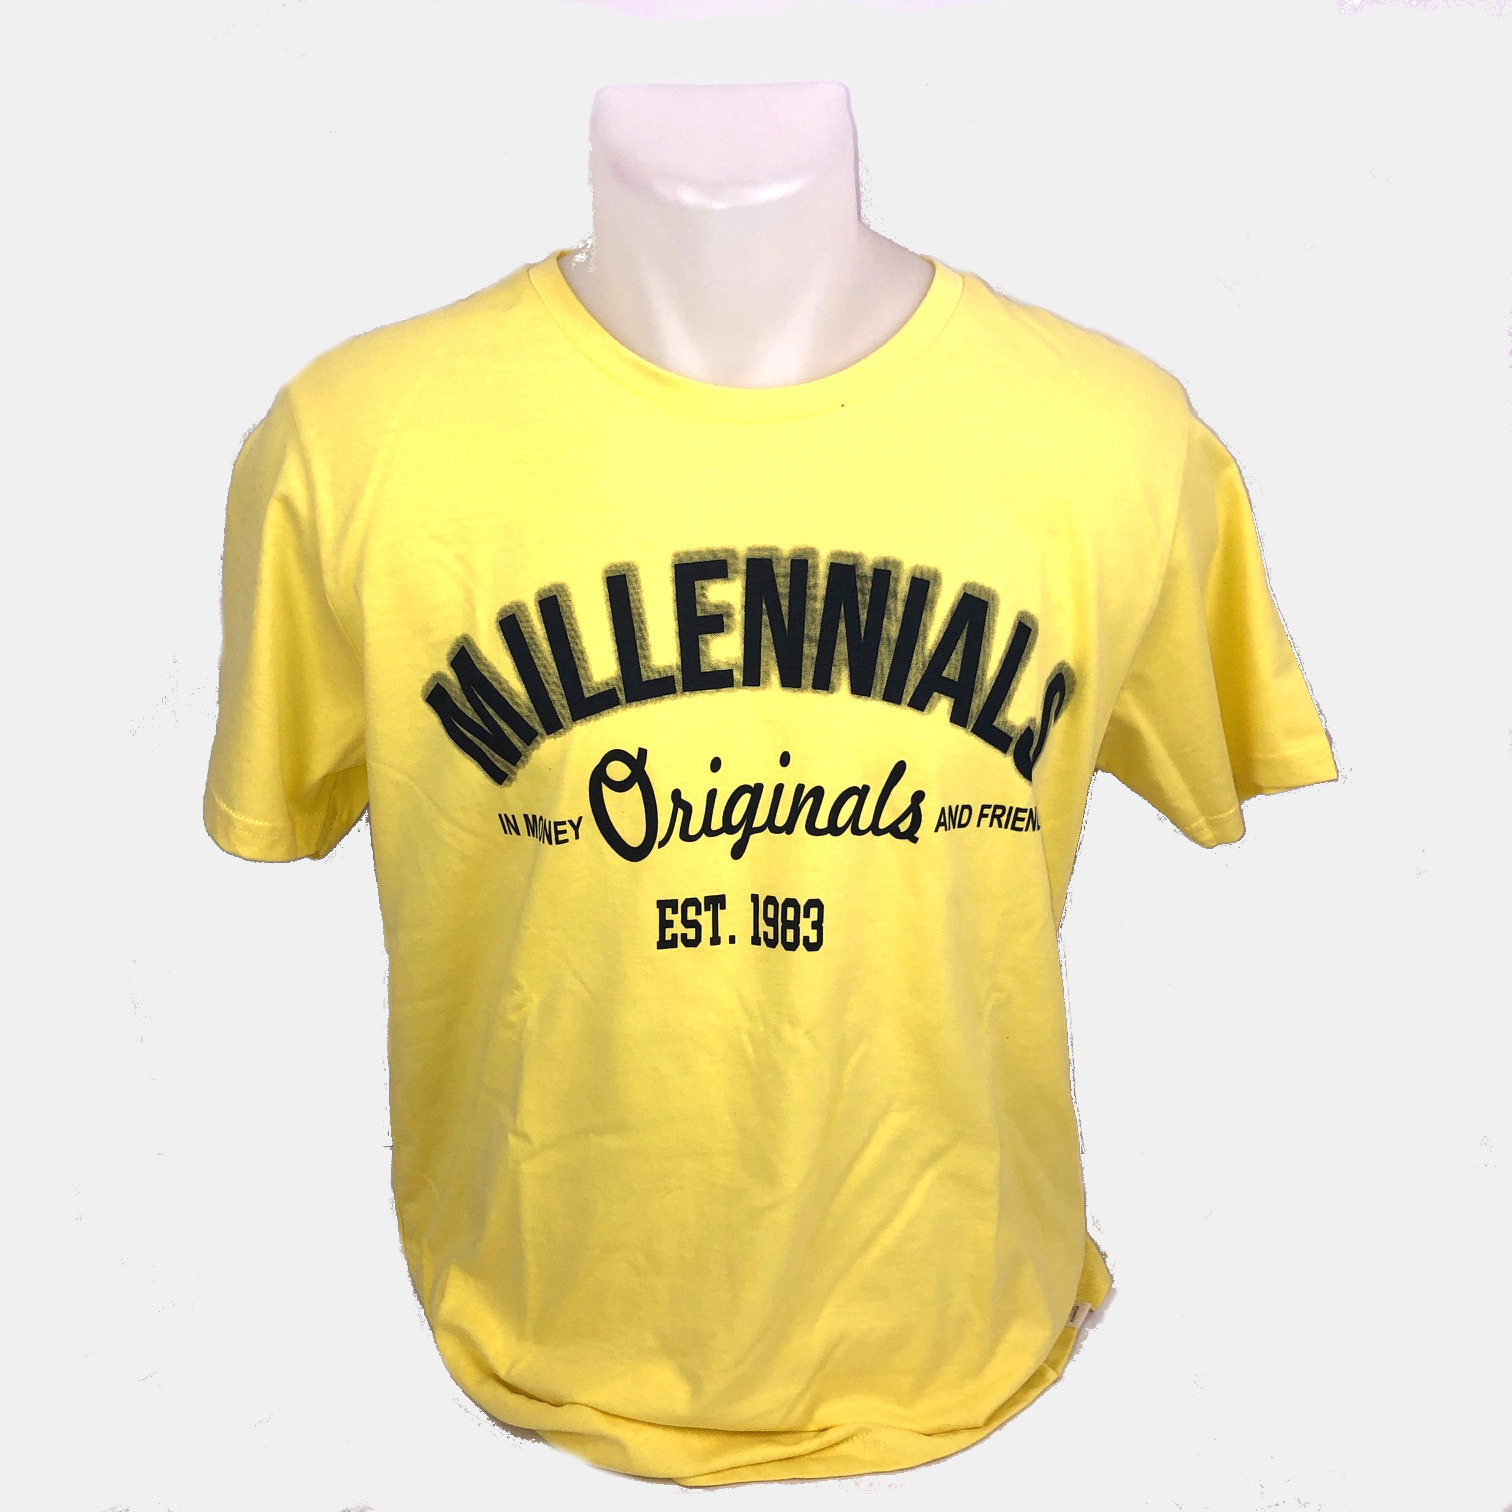 Camisetas amarillas, Nueva Colección Online